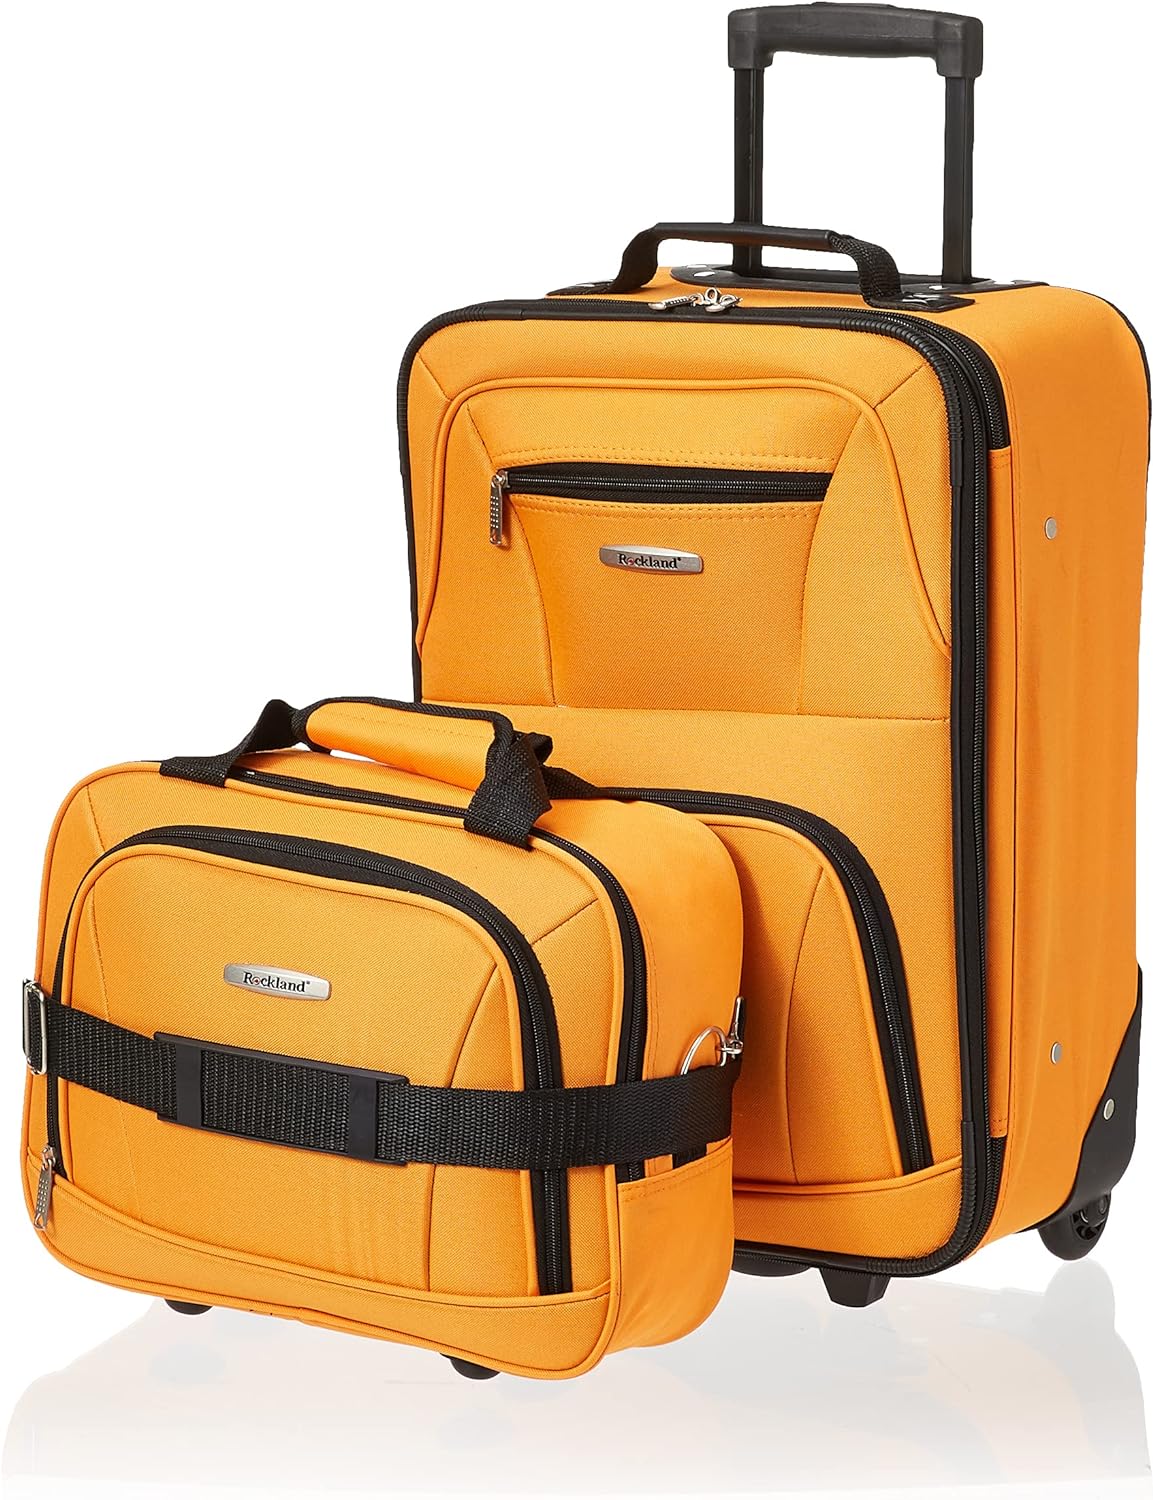 Rockland Fashion Softside Upright Luggage Set,Expandable, Orange, 2-Piece (14/19)